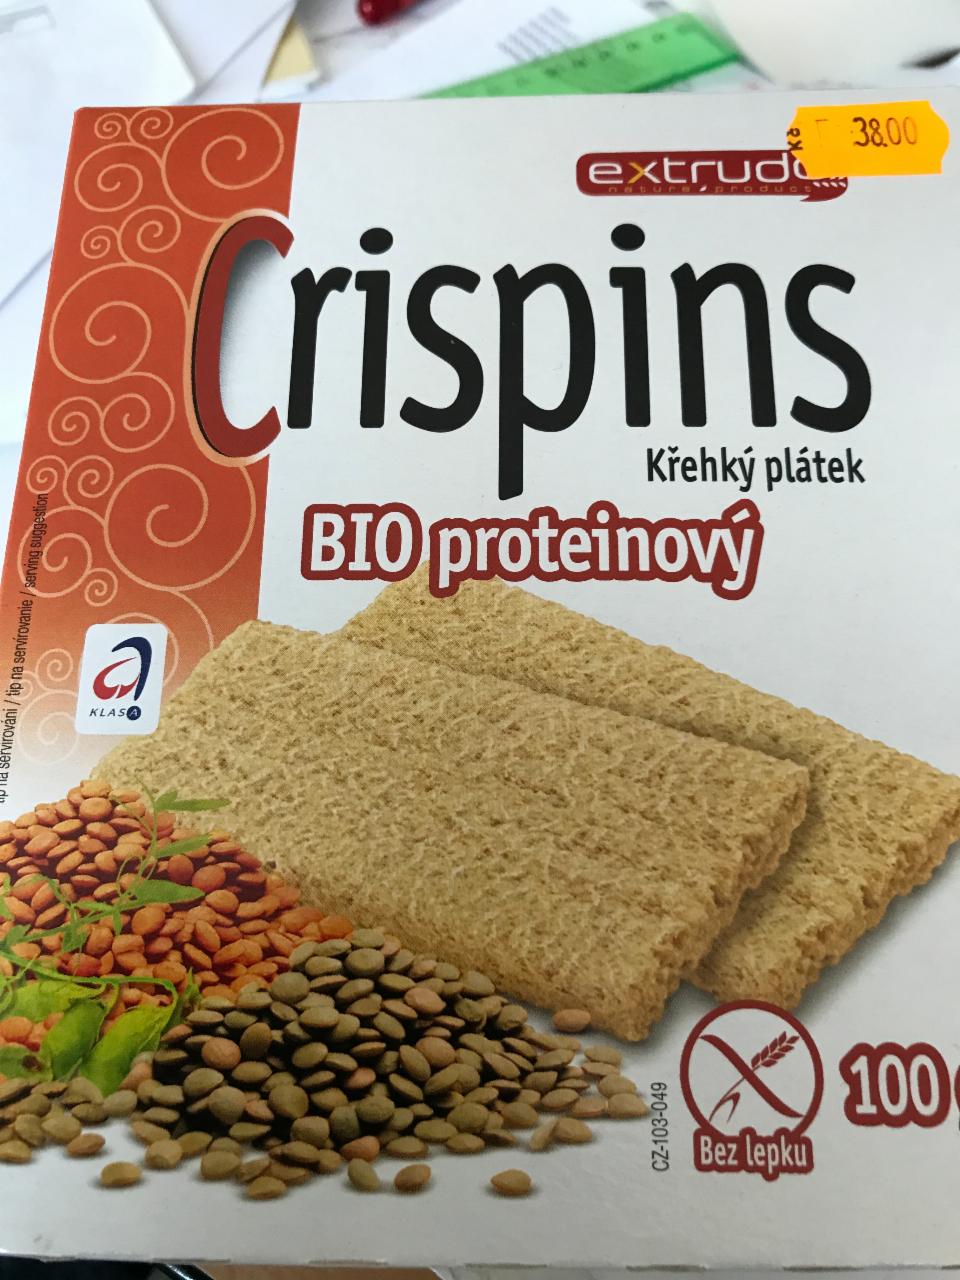 Fotografie - Crispins Bio proteinový křehký plátek Extrudo